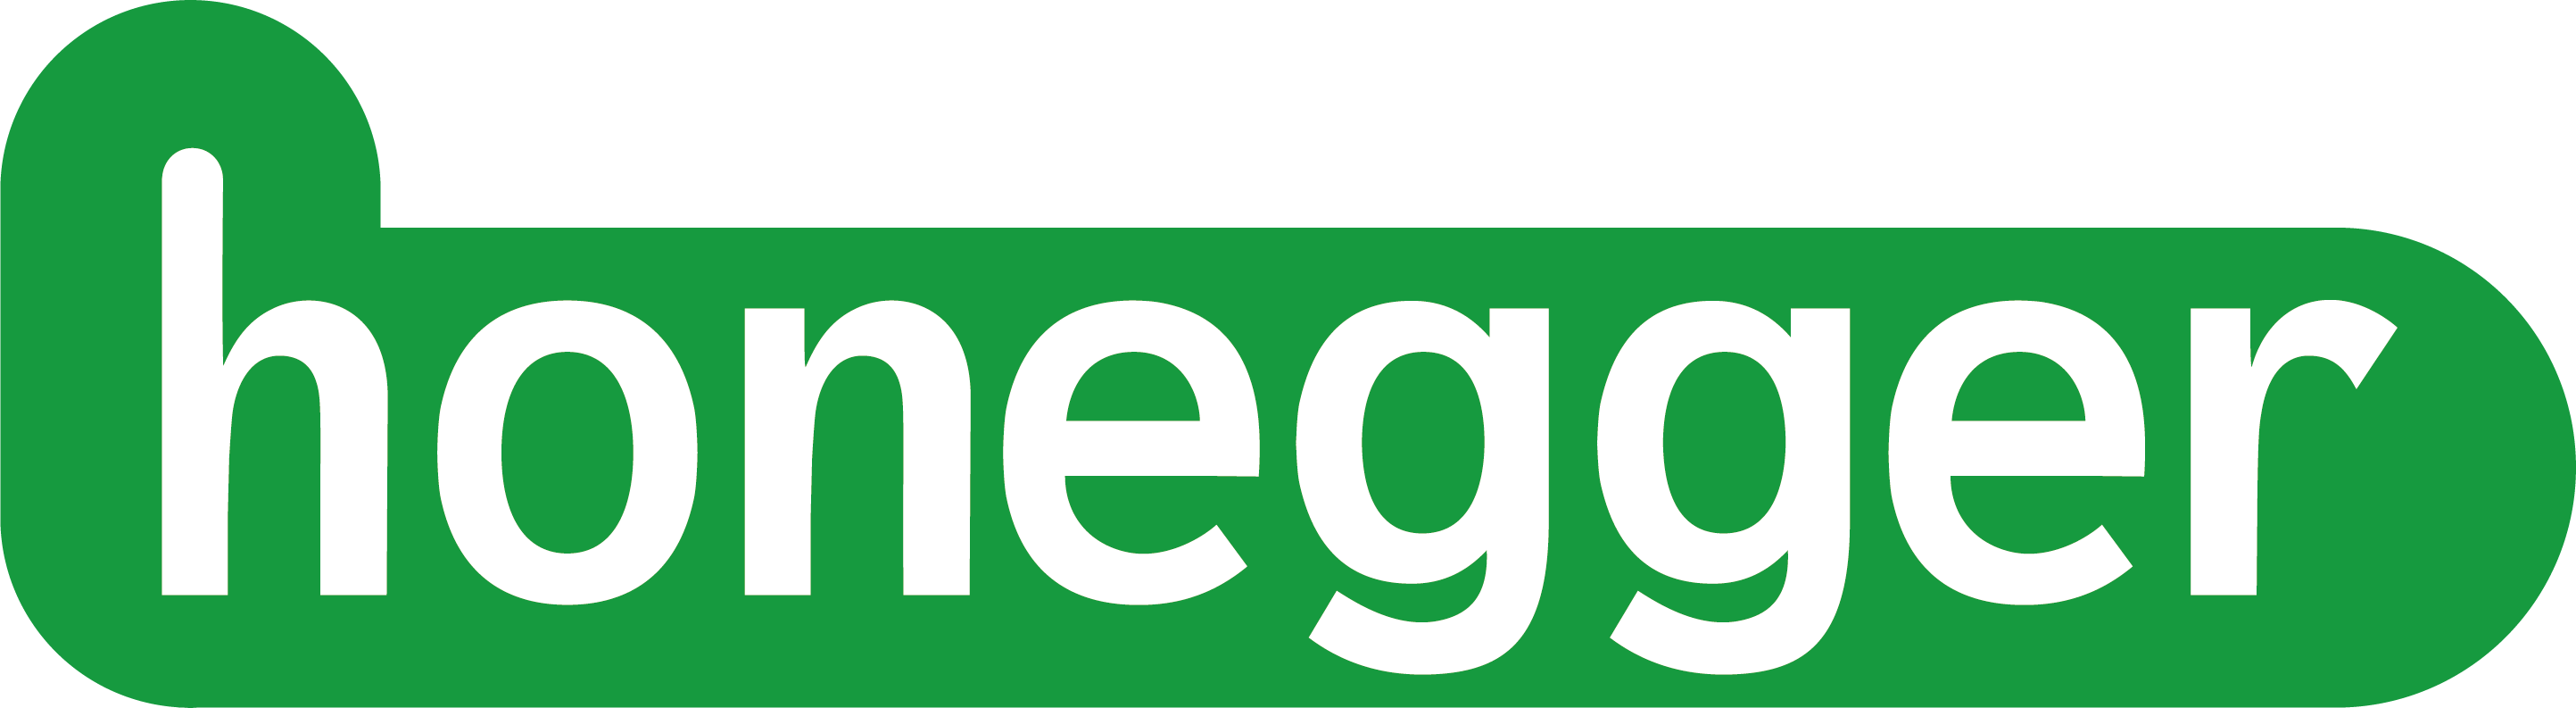 Honegger Logo